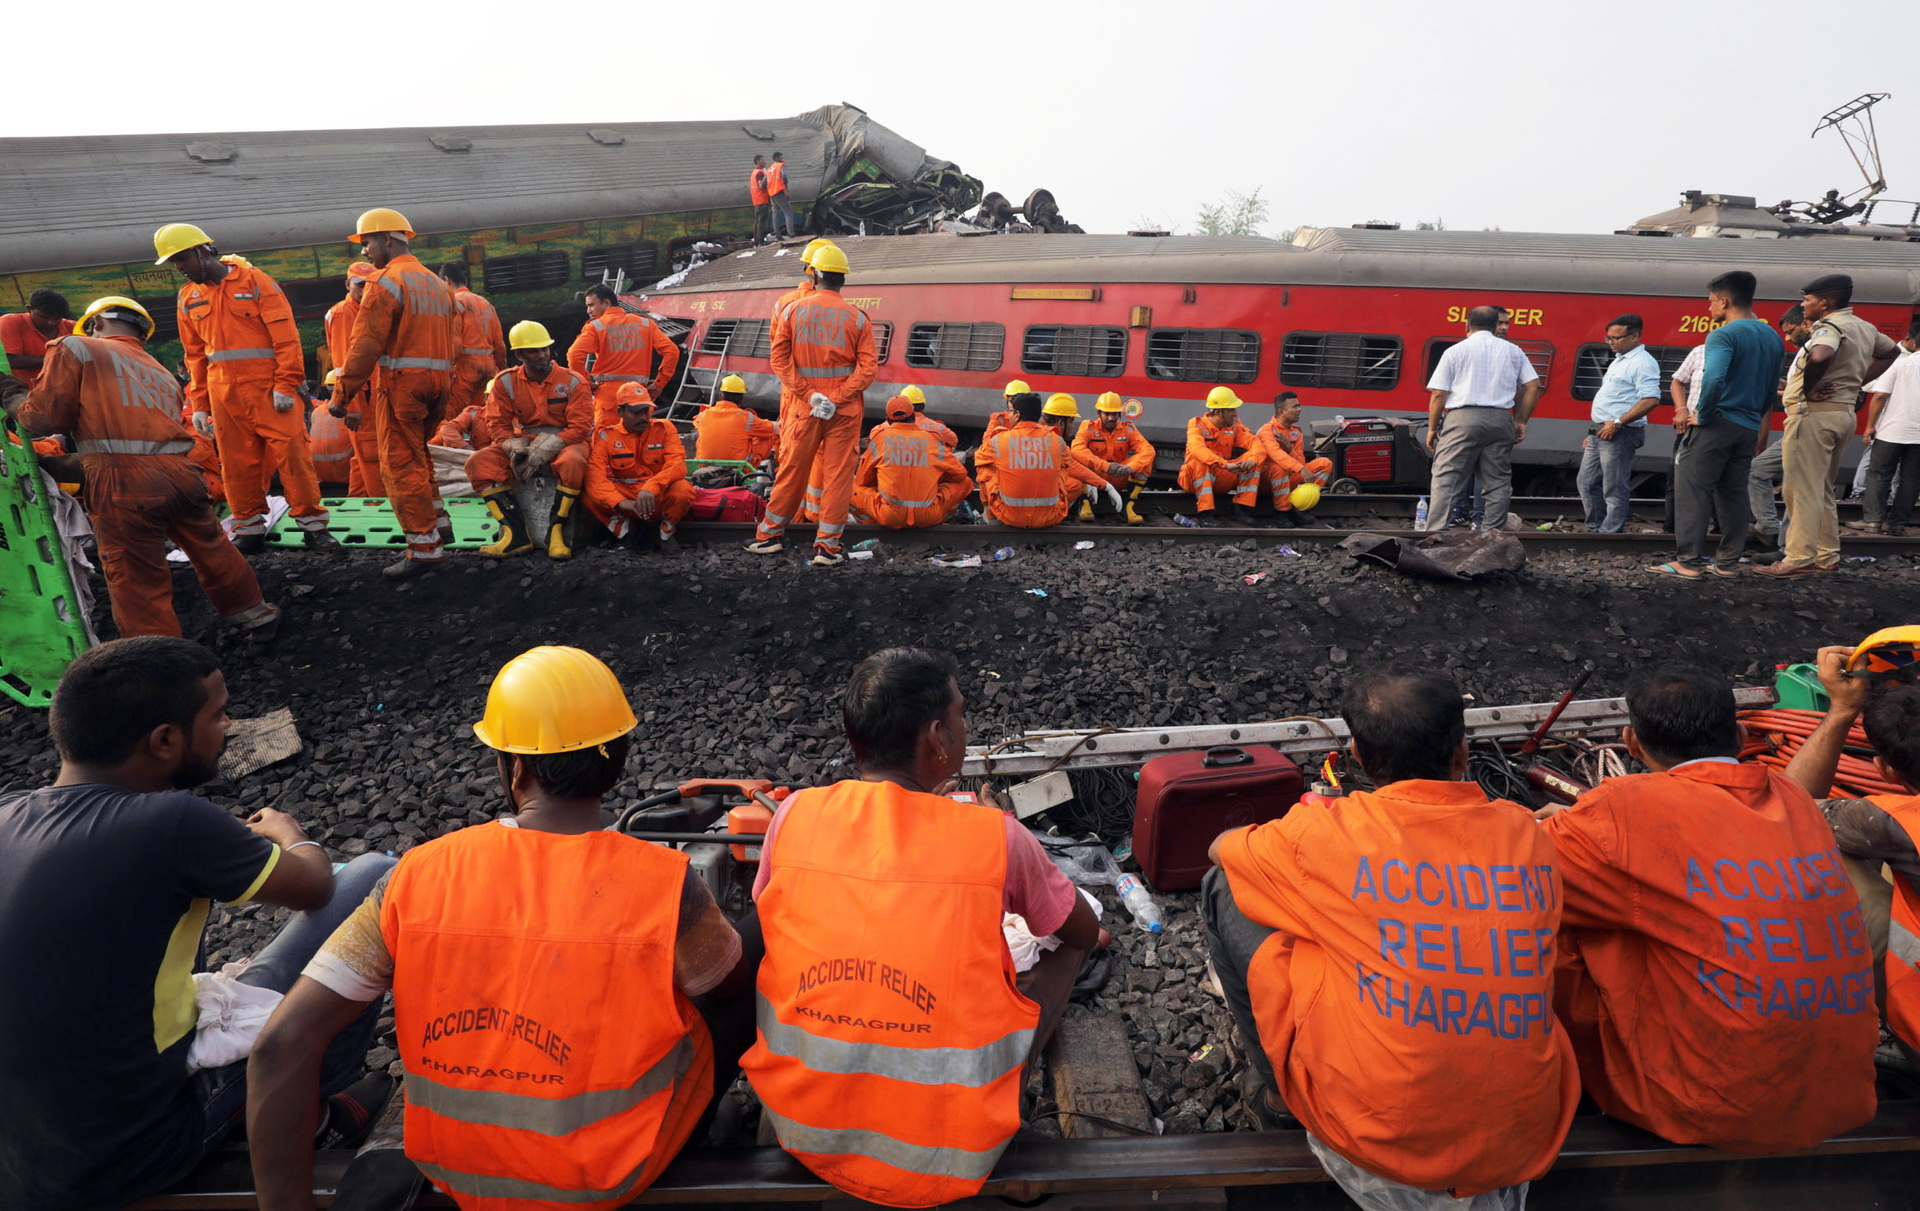 Las autoridades han lanzado una investigación de alto nivel dirigida por el comisario de seguridad ferroviaria. (PIYAL ADHIKARY / EFE)